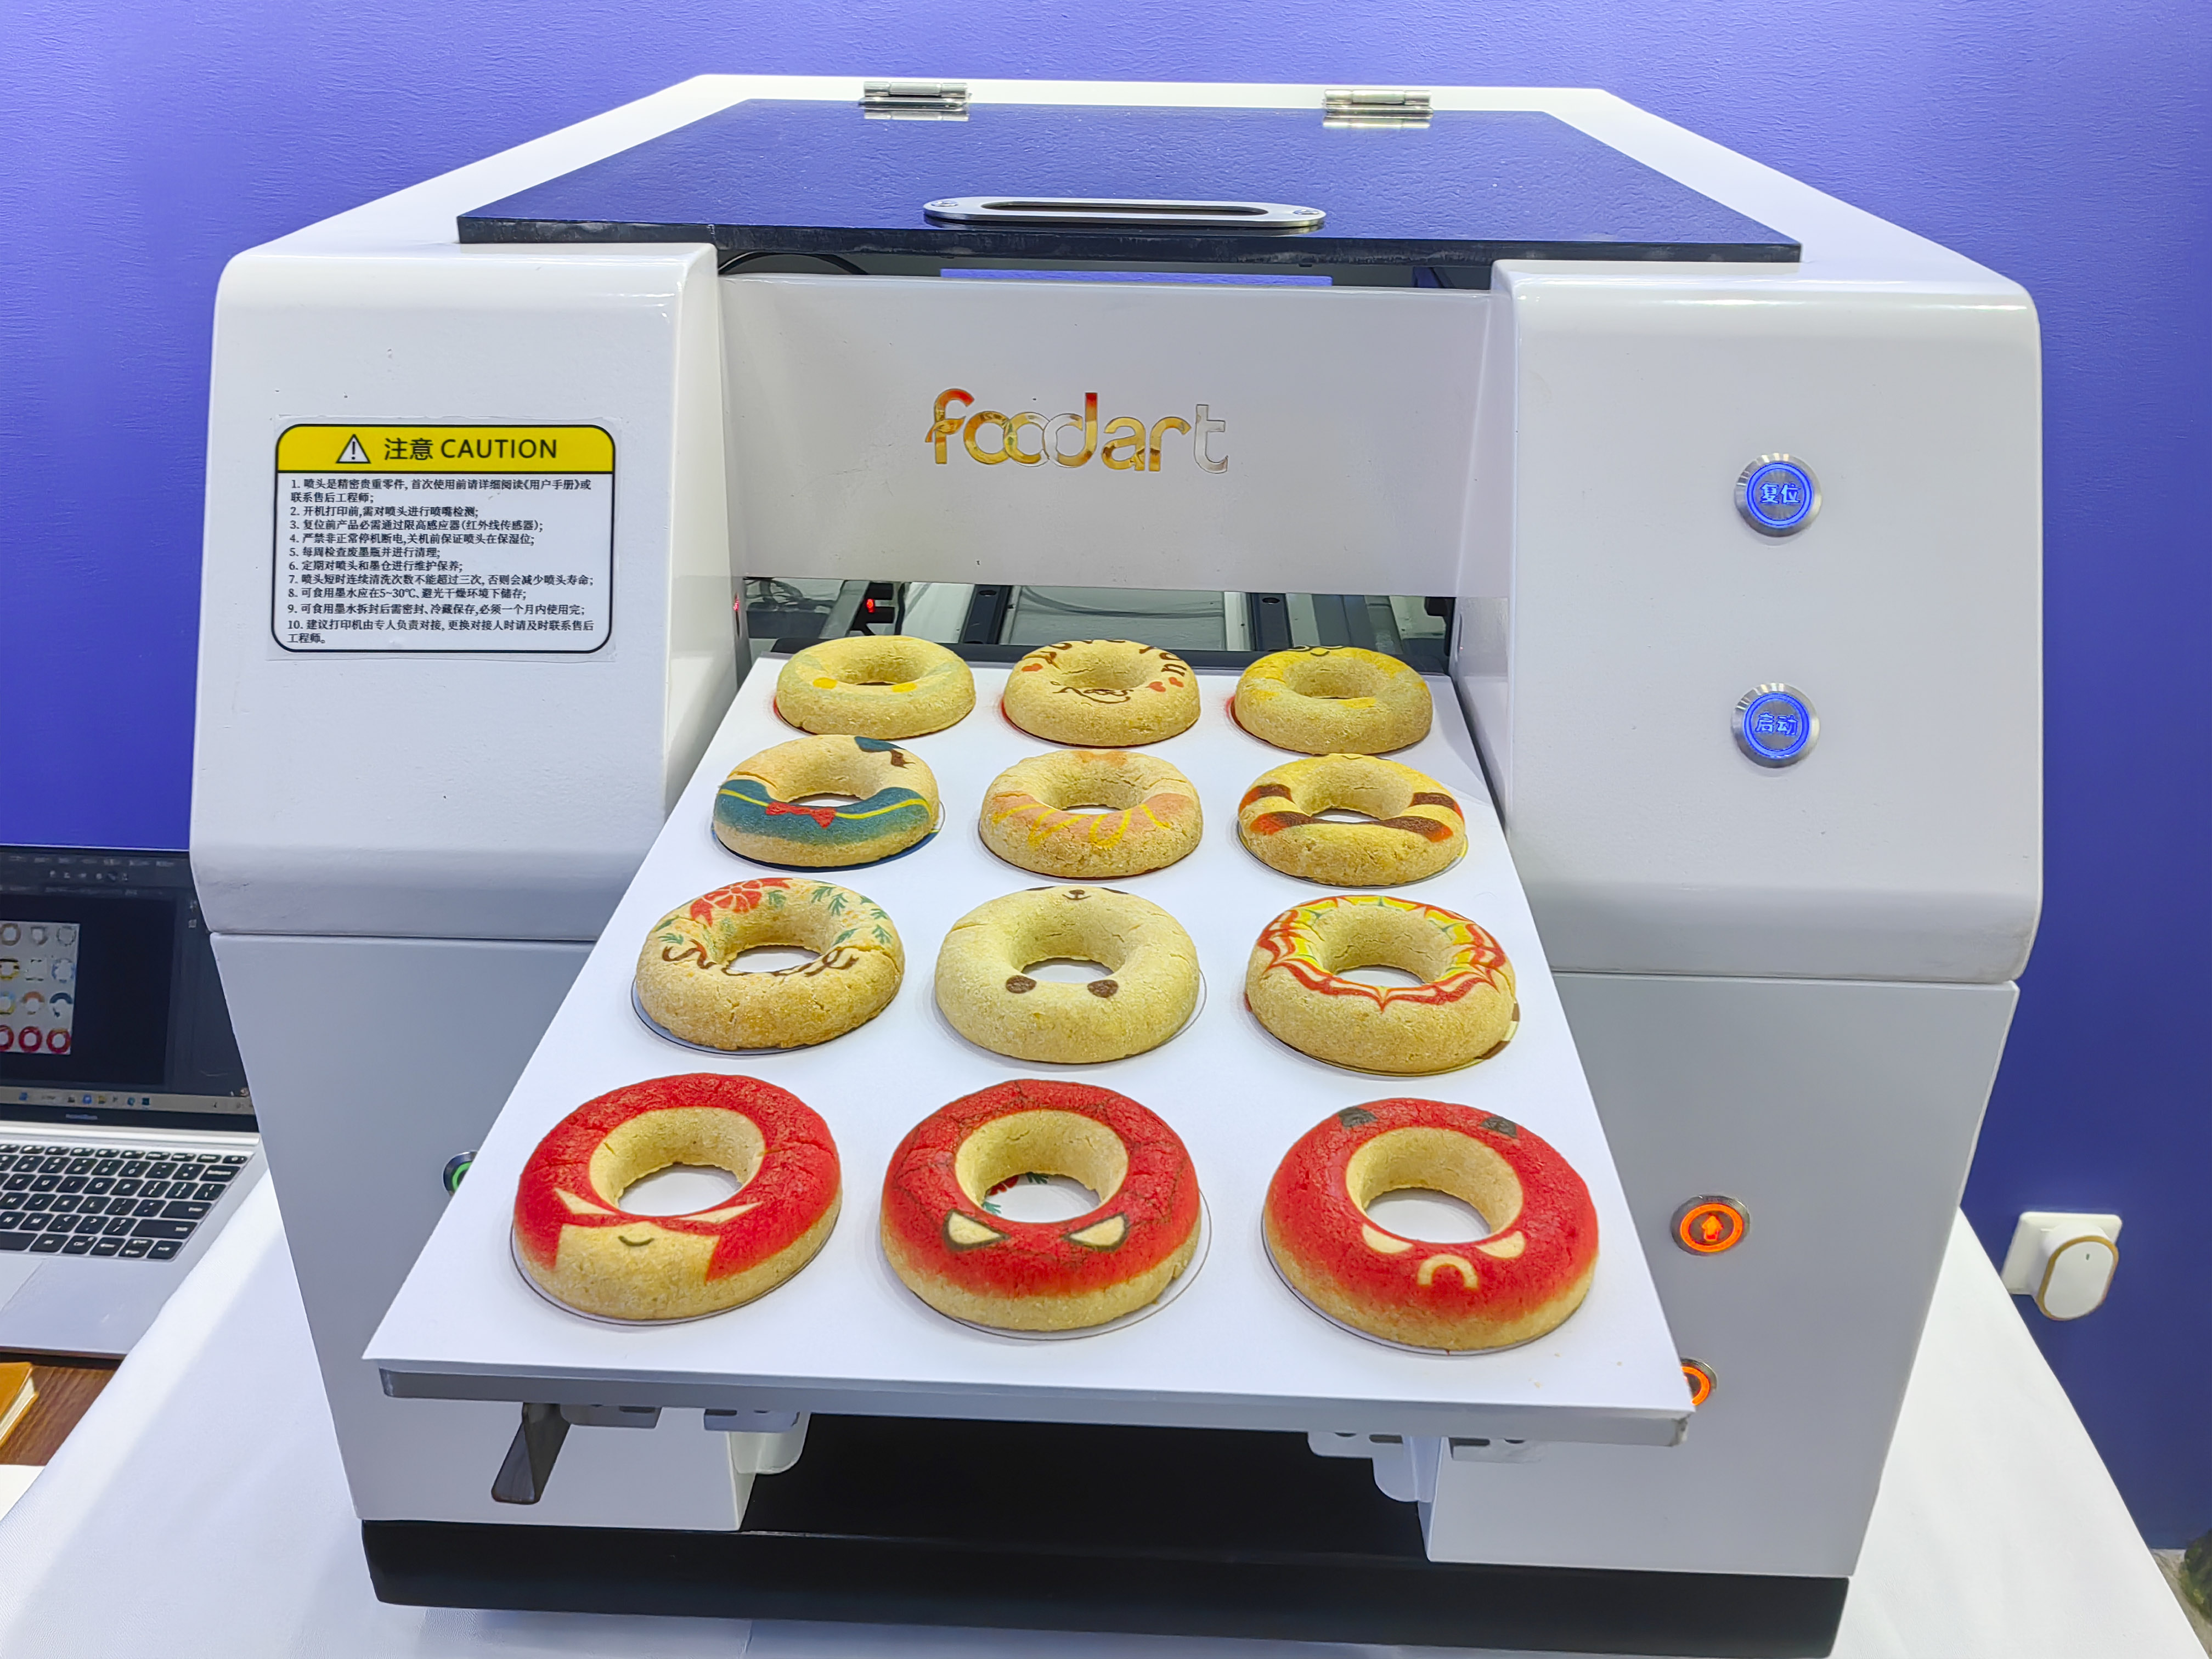 Tecnología de impresión de alimentos Nueva máquina de impresión de alimentos para imprimir galletas creativas en el círculo, para que pueda ver el círculo